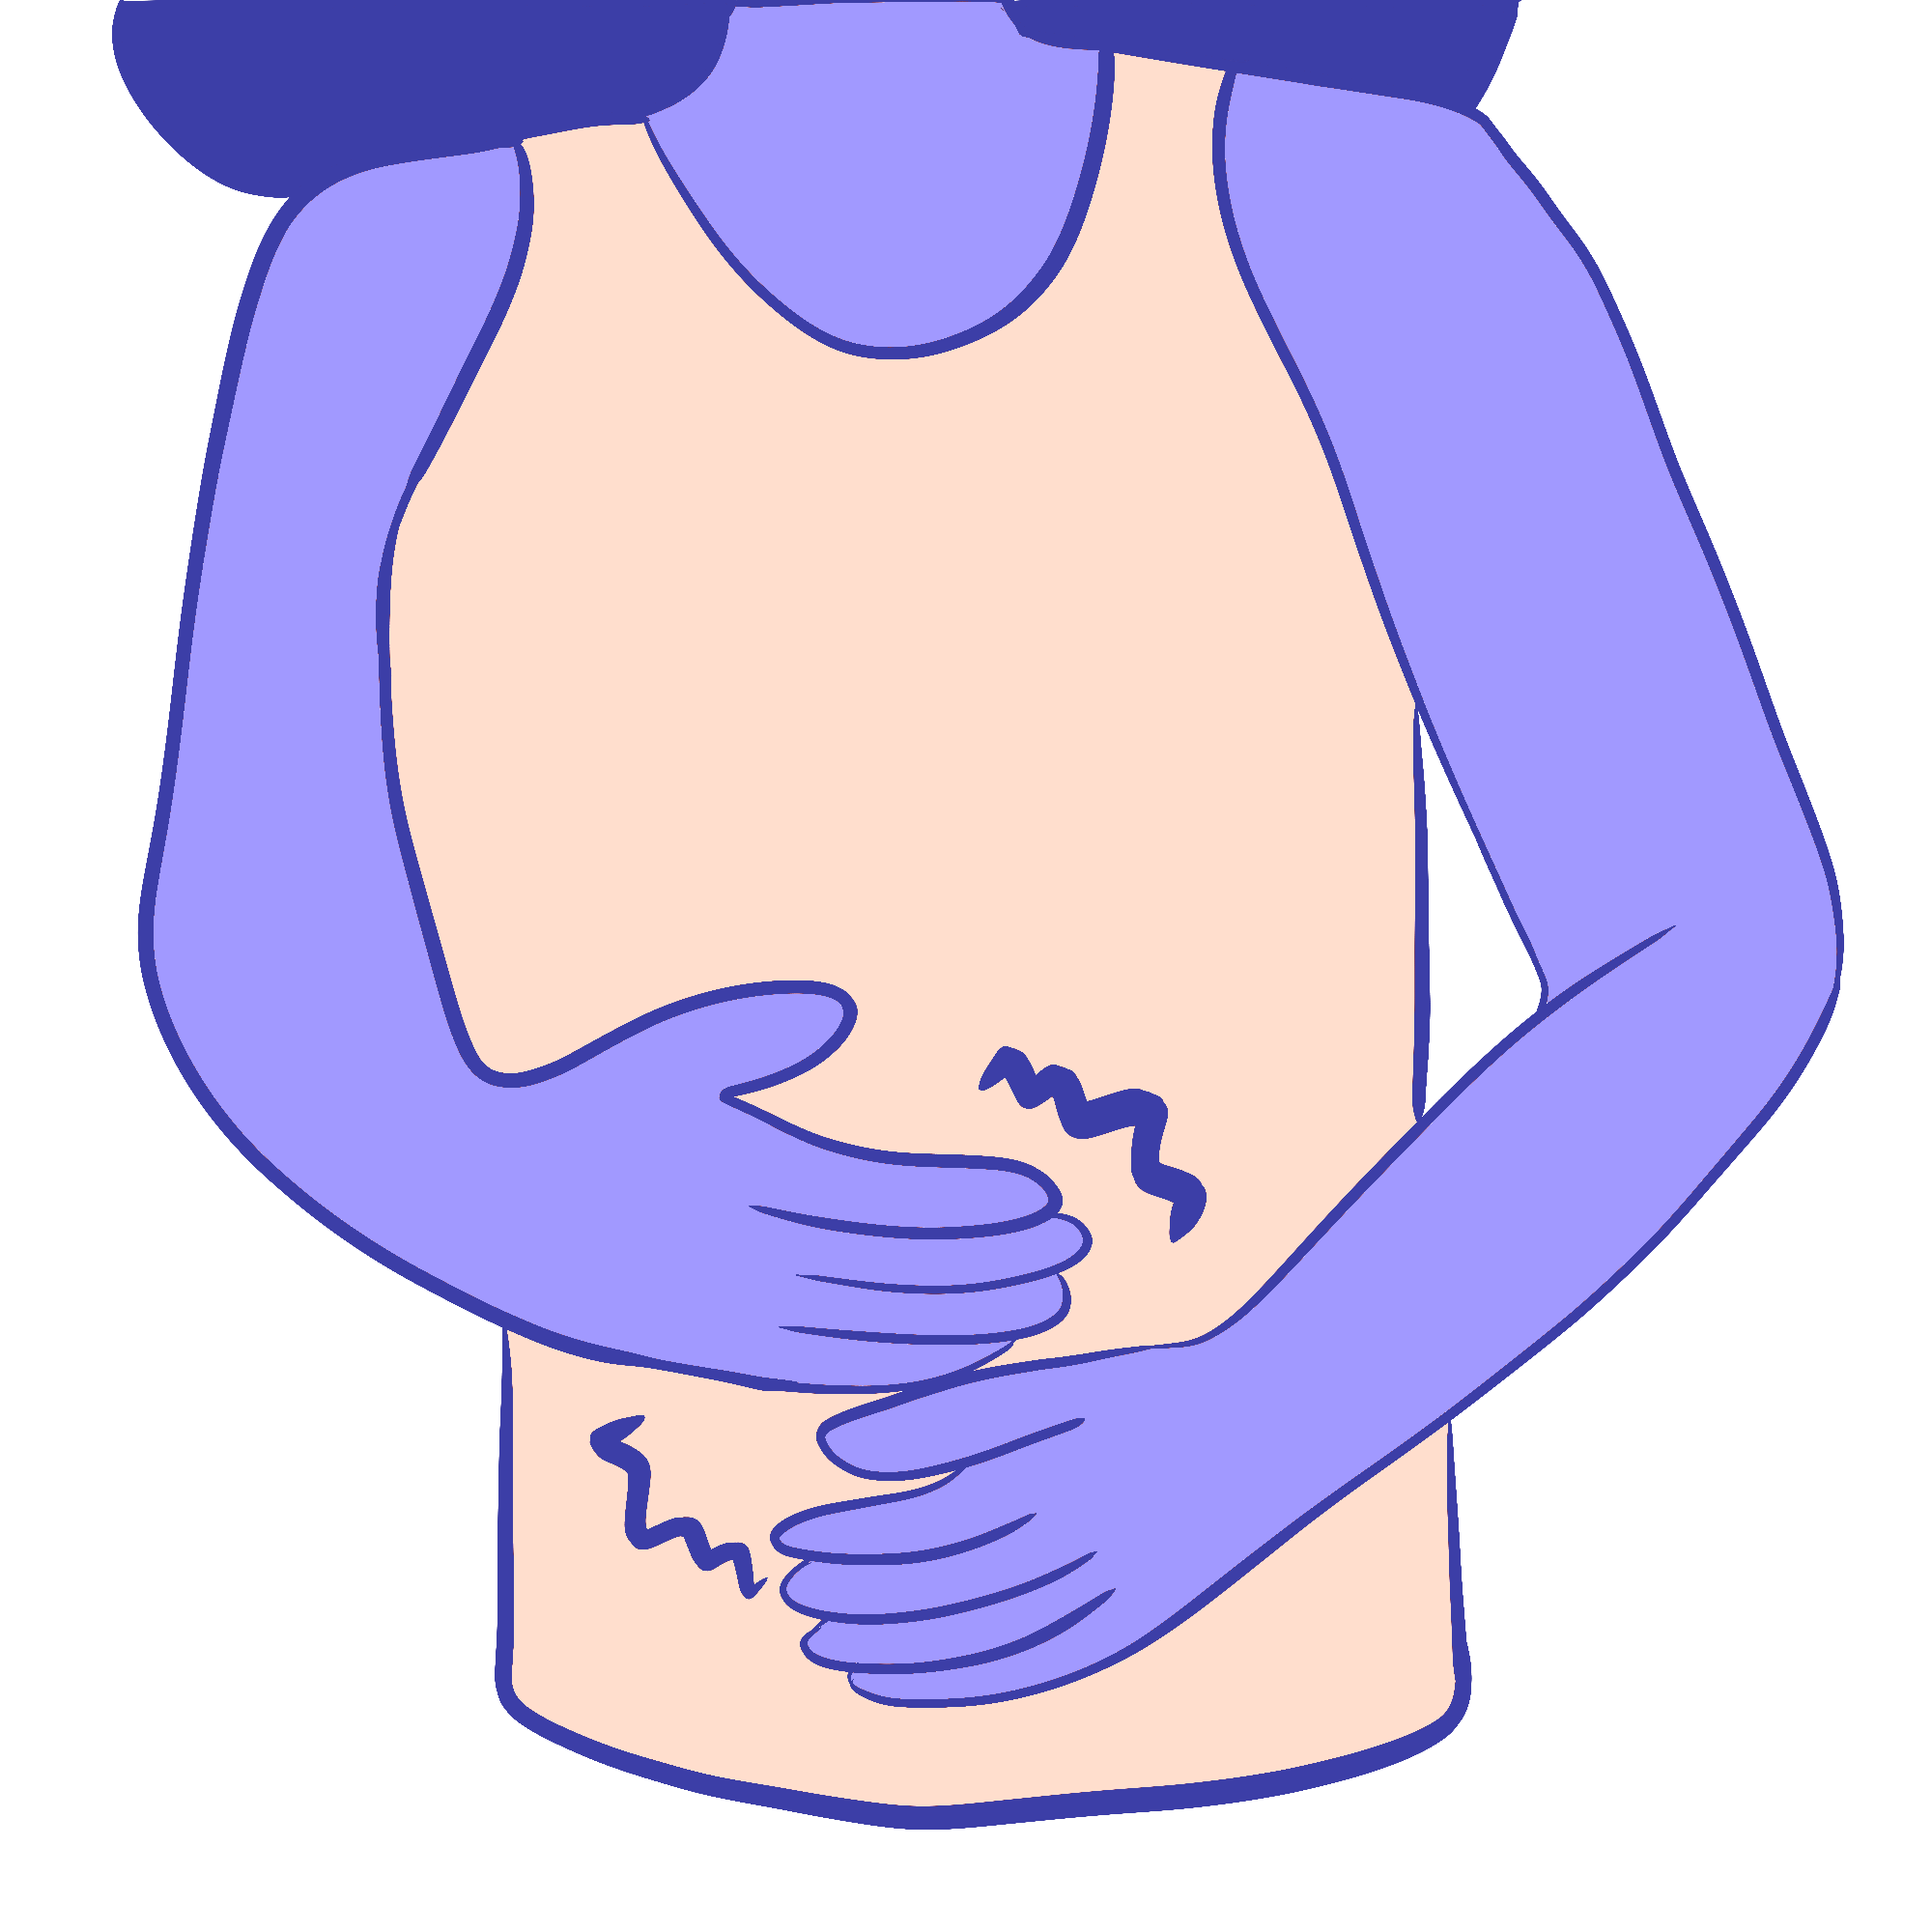 Un primer plano de la zona del torso de una persona, que muestra que siente molestias o dolor.